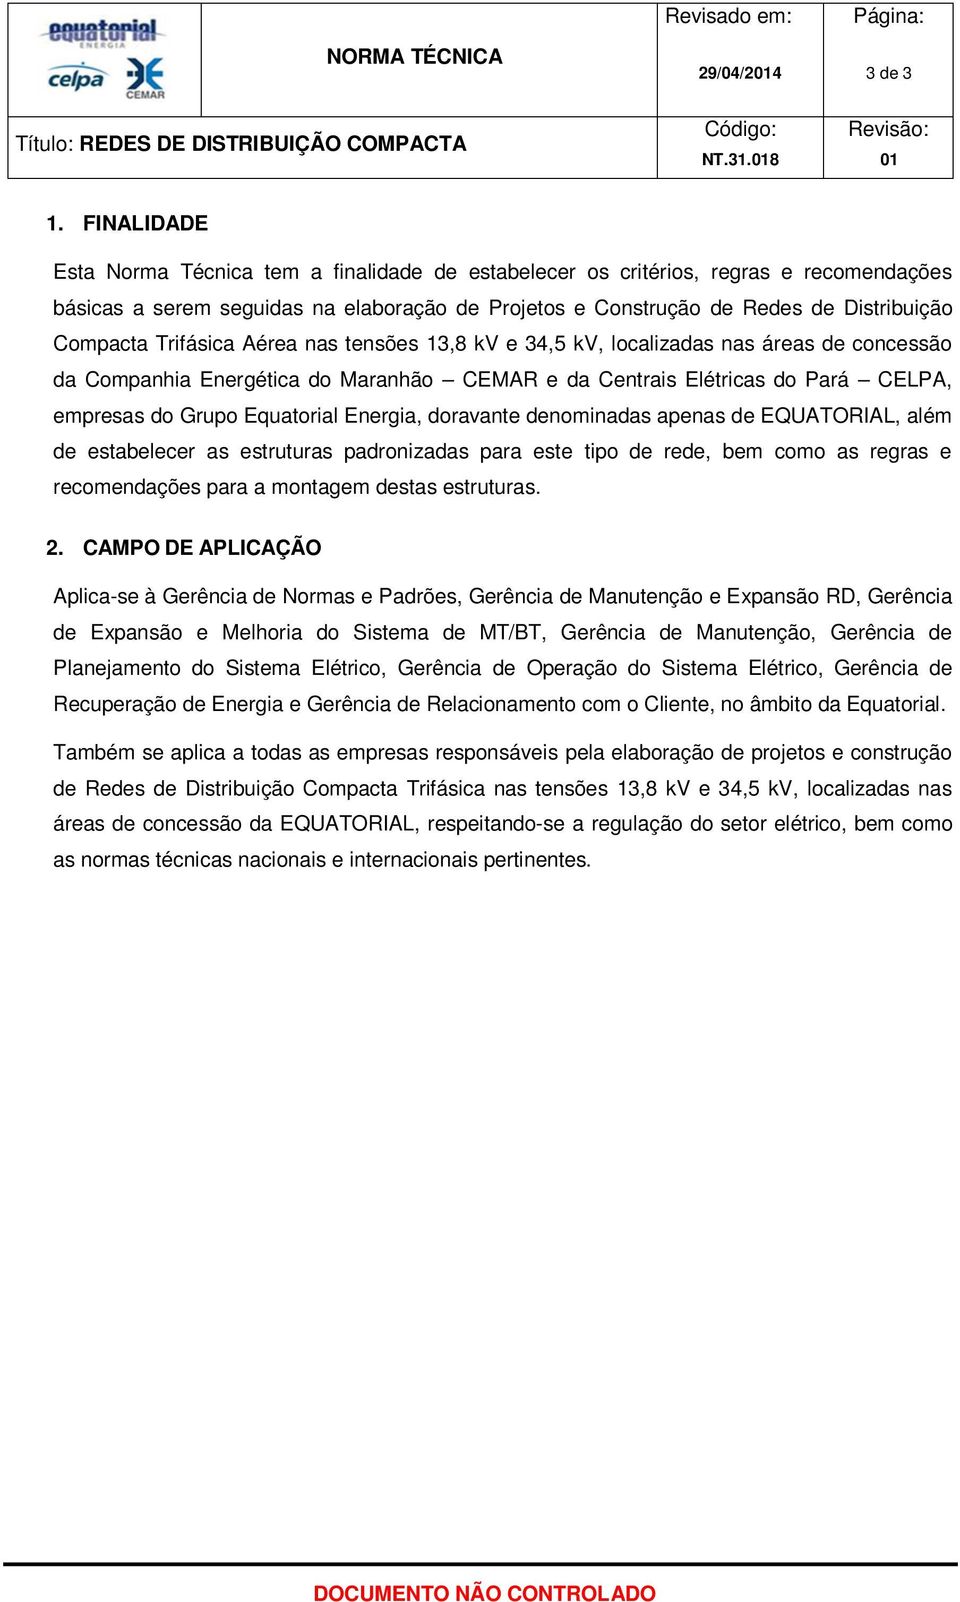 Trifásica Aérea nas tensões 13,8 kv e 34,5 kv, localizadas nas áreas de concessão da Companhia Energética do Maranhão CEMAR e da Centrais Elétricas do Pará CELPA, empresas do Grupo Equatorial